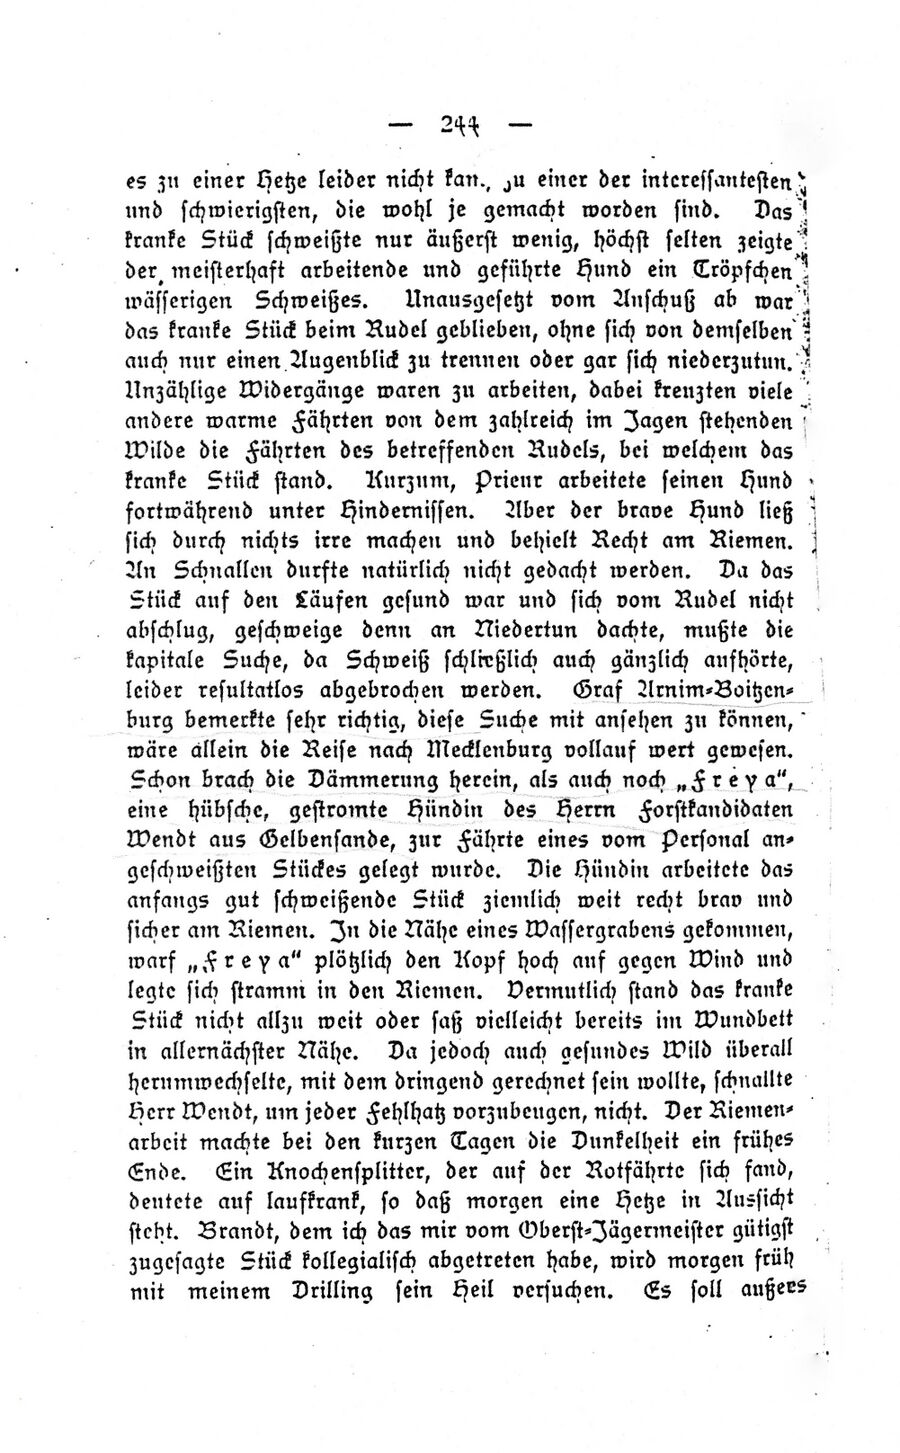 Gelb Forst Ausflug Reichs-Jagdhundeverein 18951 05